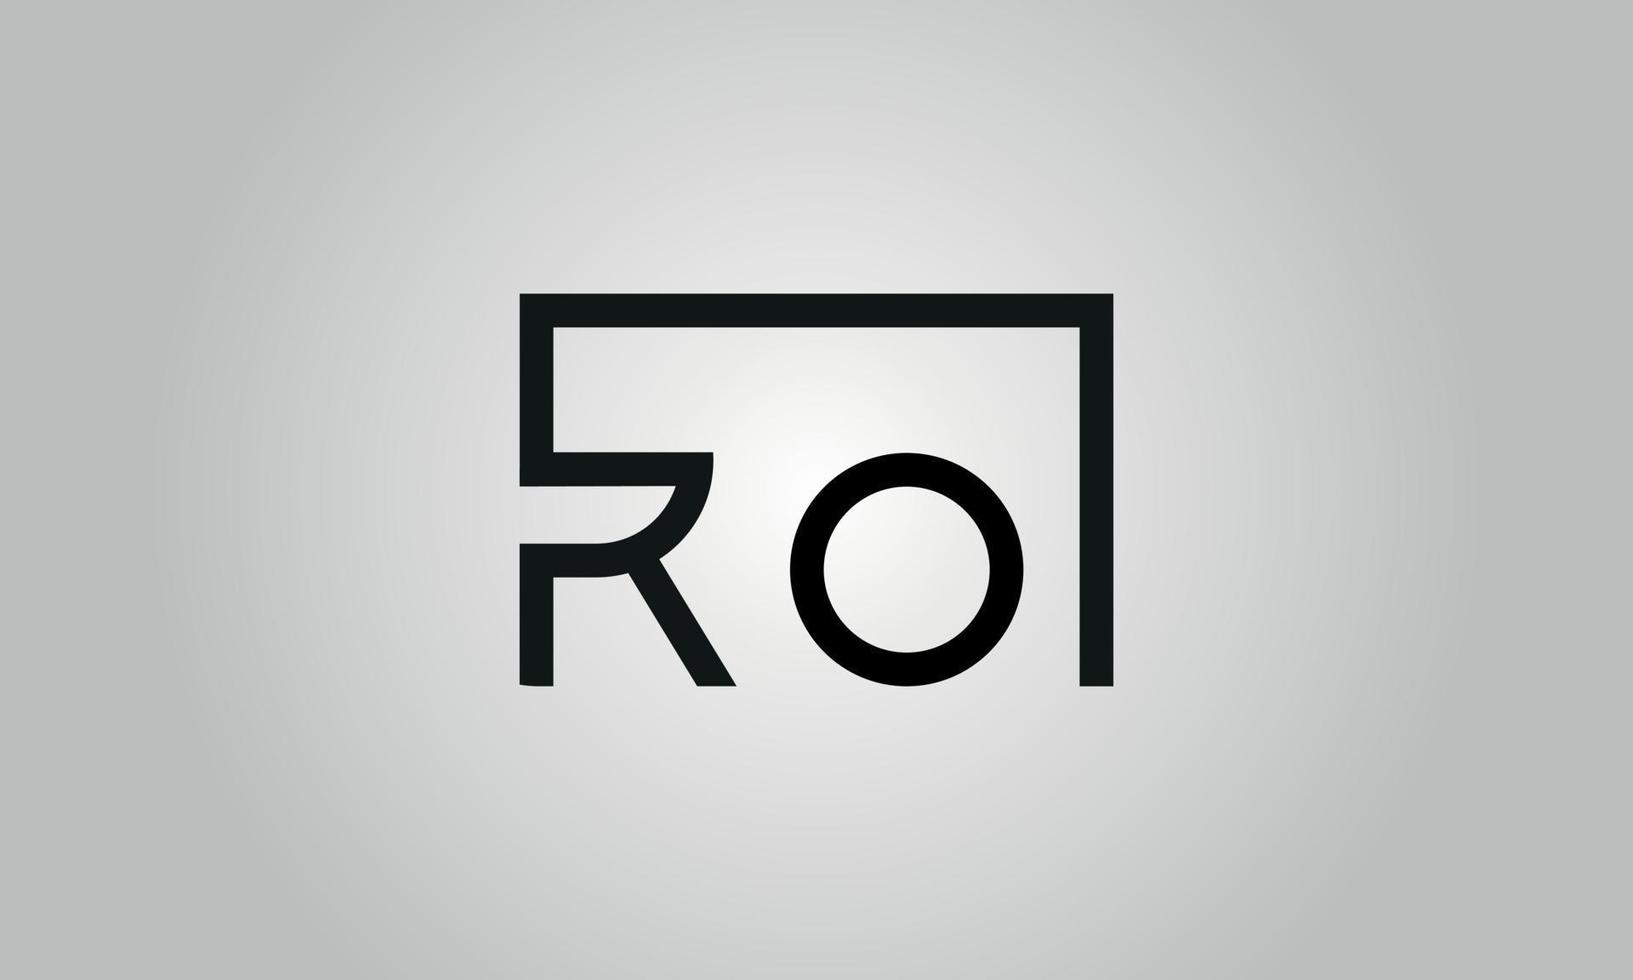 création de logo lettre ro. logo ro avec forme carrée dans le modèle de vecteur gratuit de vecteur de couleurs noires.